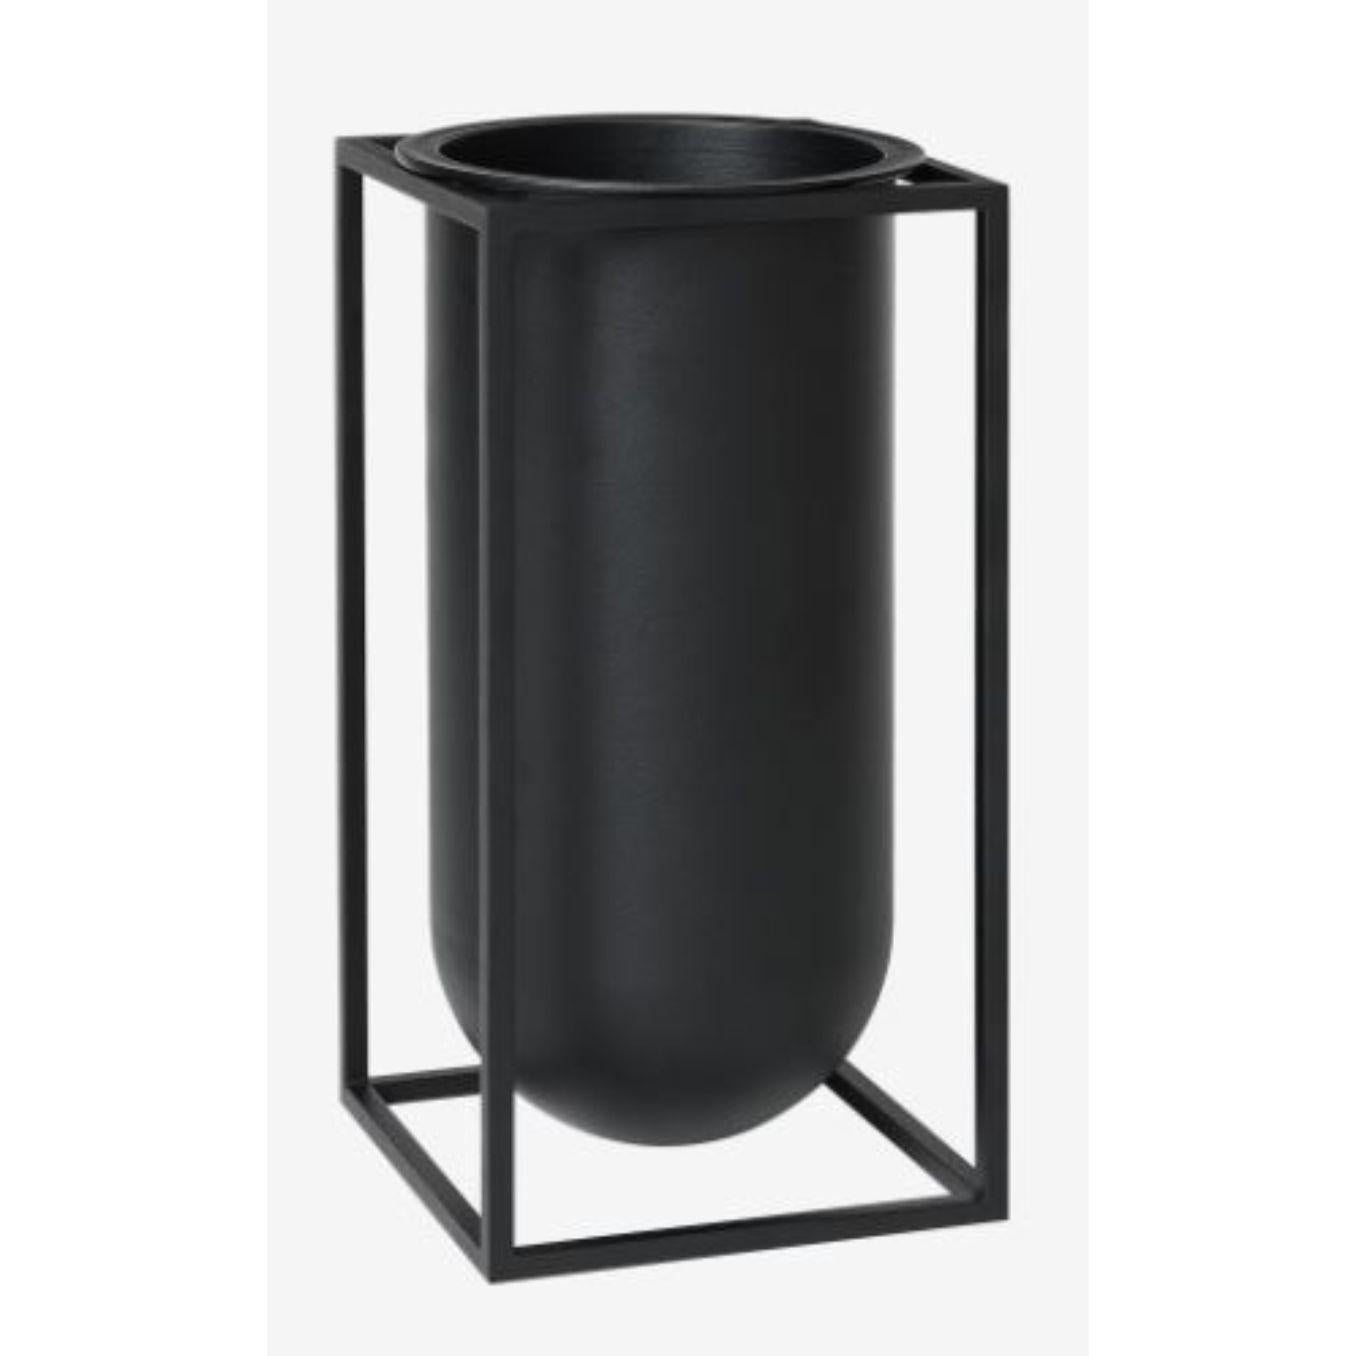 Vase Lolo Kubus noir de Lassen
Dimensions : D 12 x L 12 x H 24 cm 
Matériaux : Métal 
Poids : 2.50 kg

Le vase Kubus Lolo a été conçu à l'origine par Søren Lassen en 2014, mais a été lancé pour célébrer le 10e anniversaire de by Lassen en 2018.